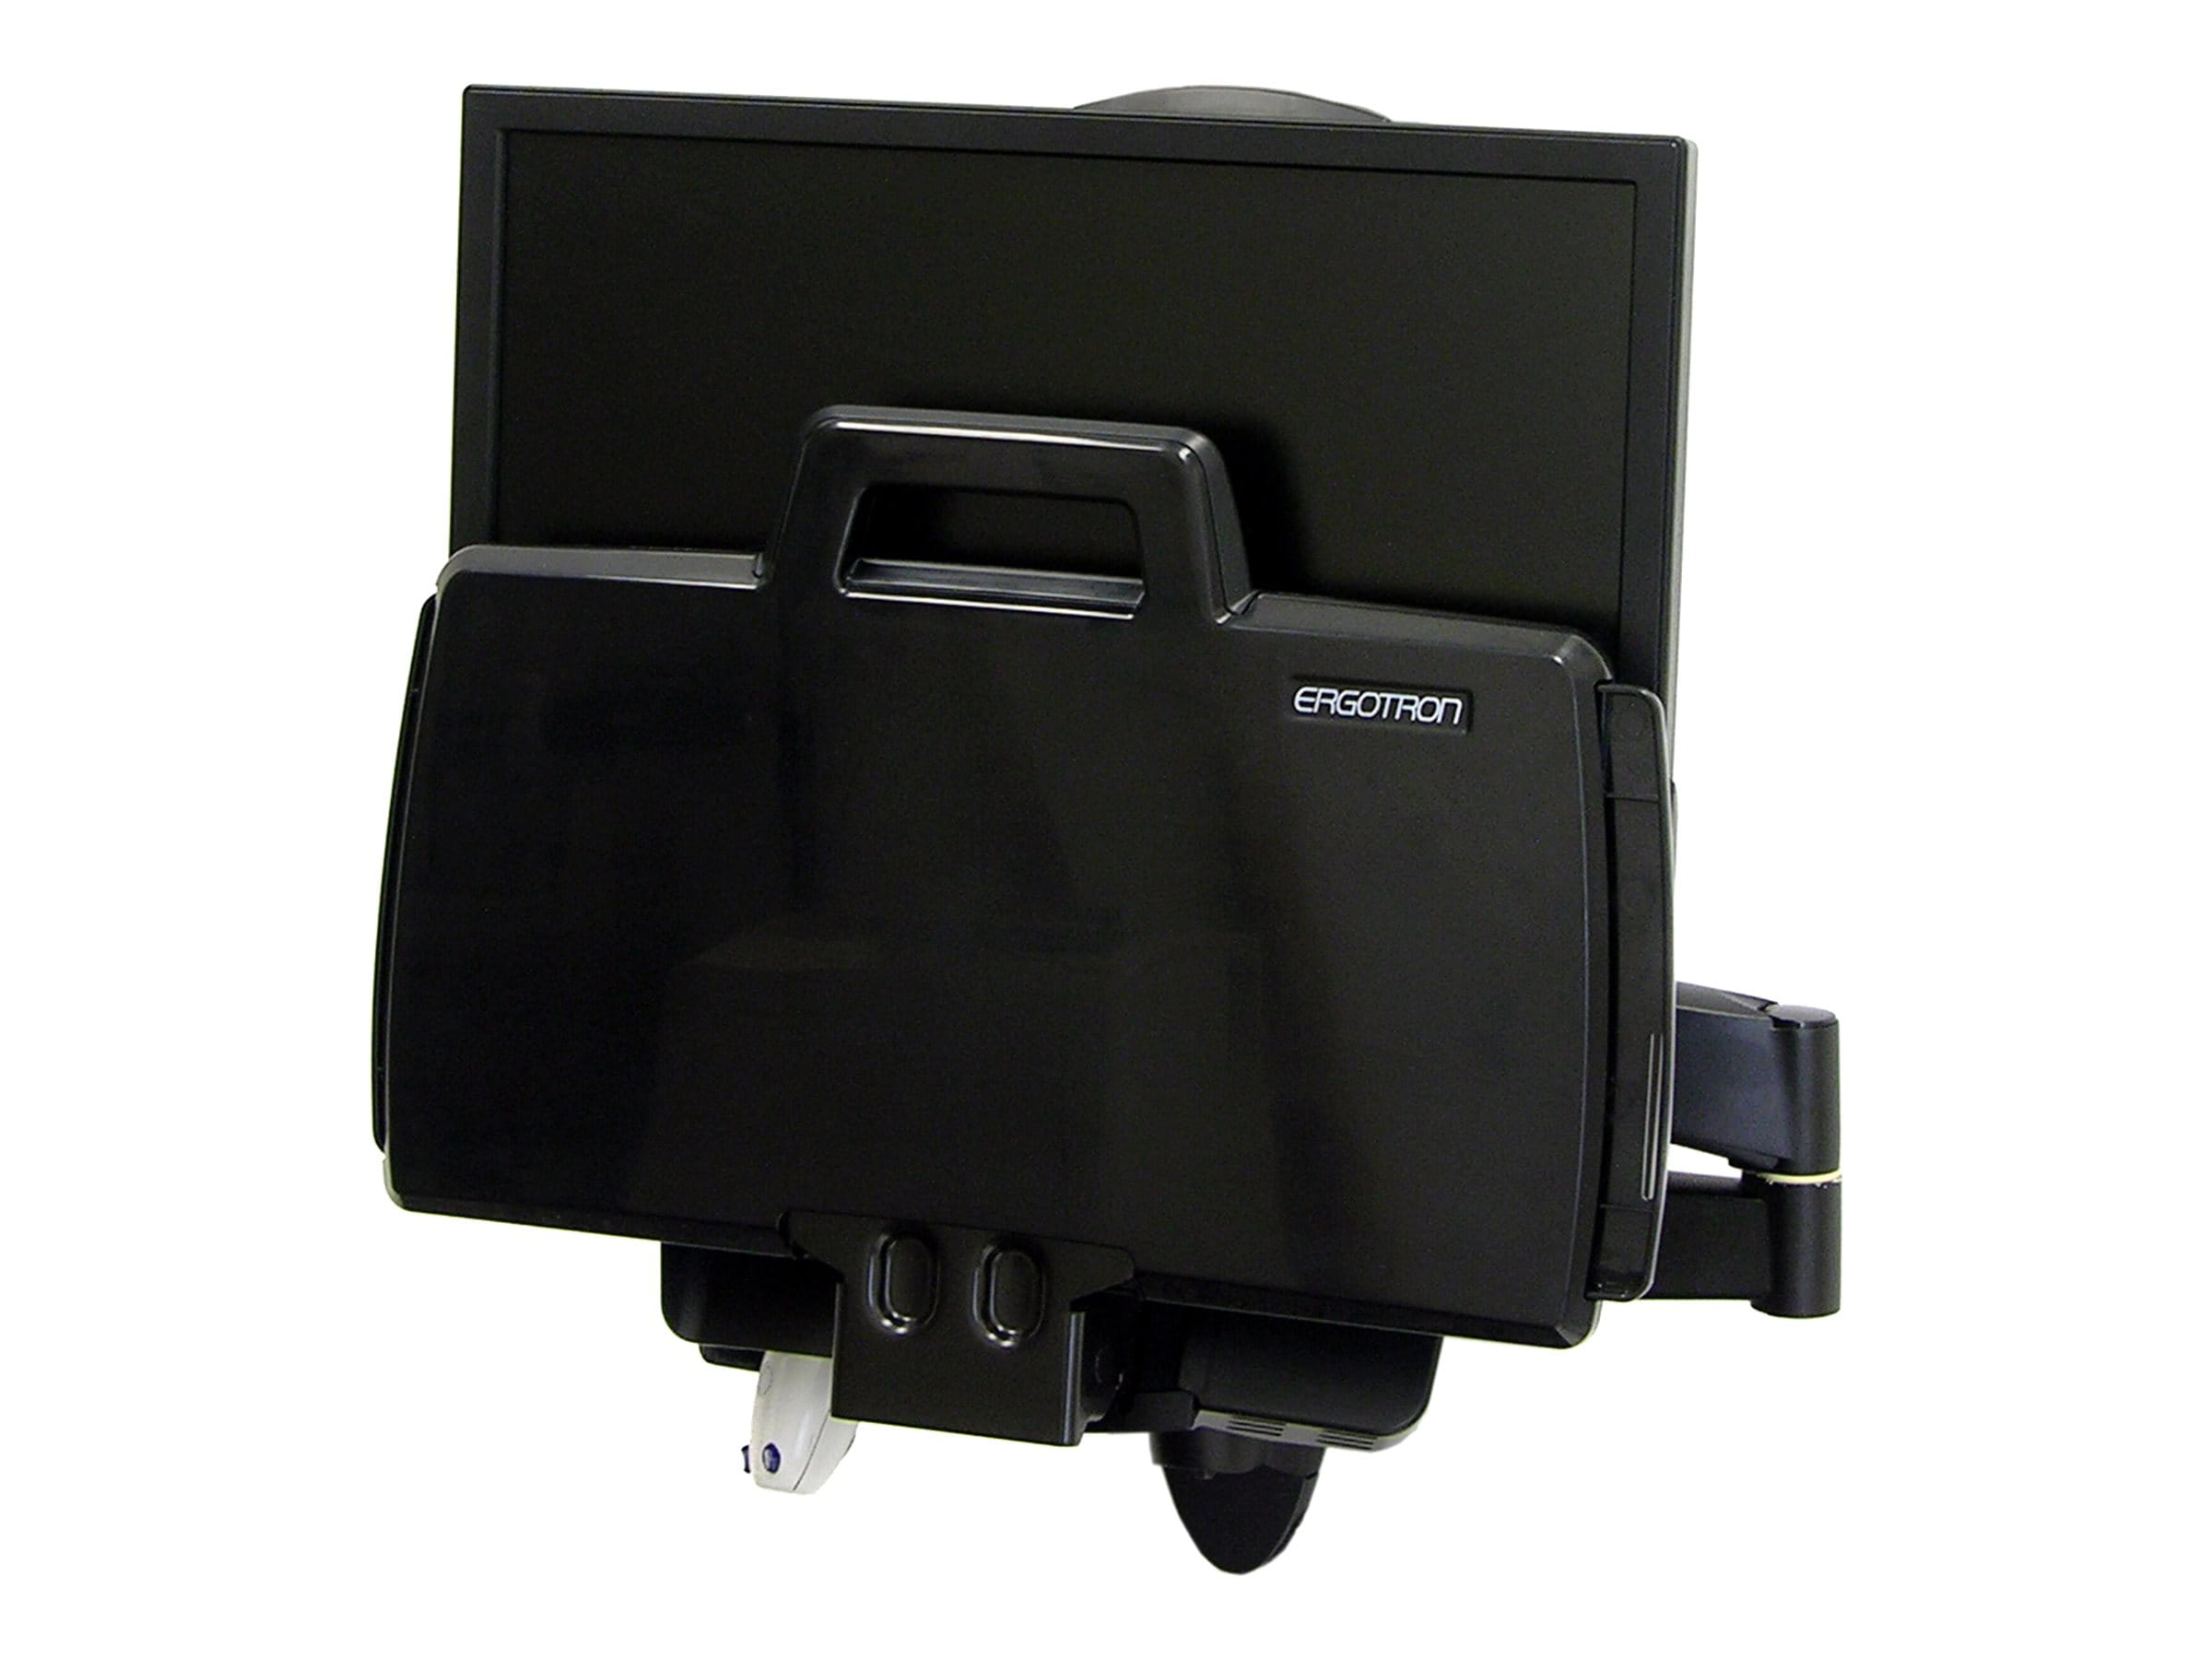 Ergotron 200 Series - Befestigungskit (Gelenkarm, Barcode-Scanner-Halter, Tastaturablage mit linker/rechter Mausablage) - für LCD-Display / PC-Ausrüstung - Stahl - Schwarz - Bildschirmgröße: bis zu 61 cm (bis zu 24 Zoll)